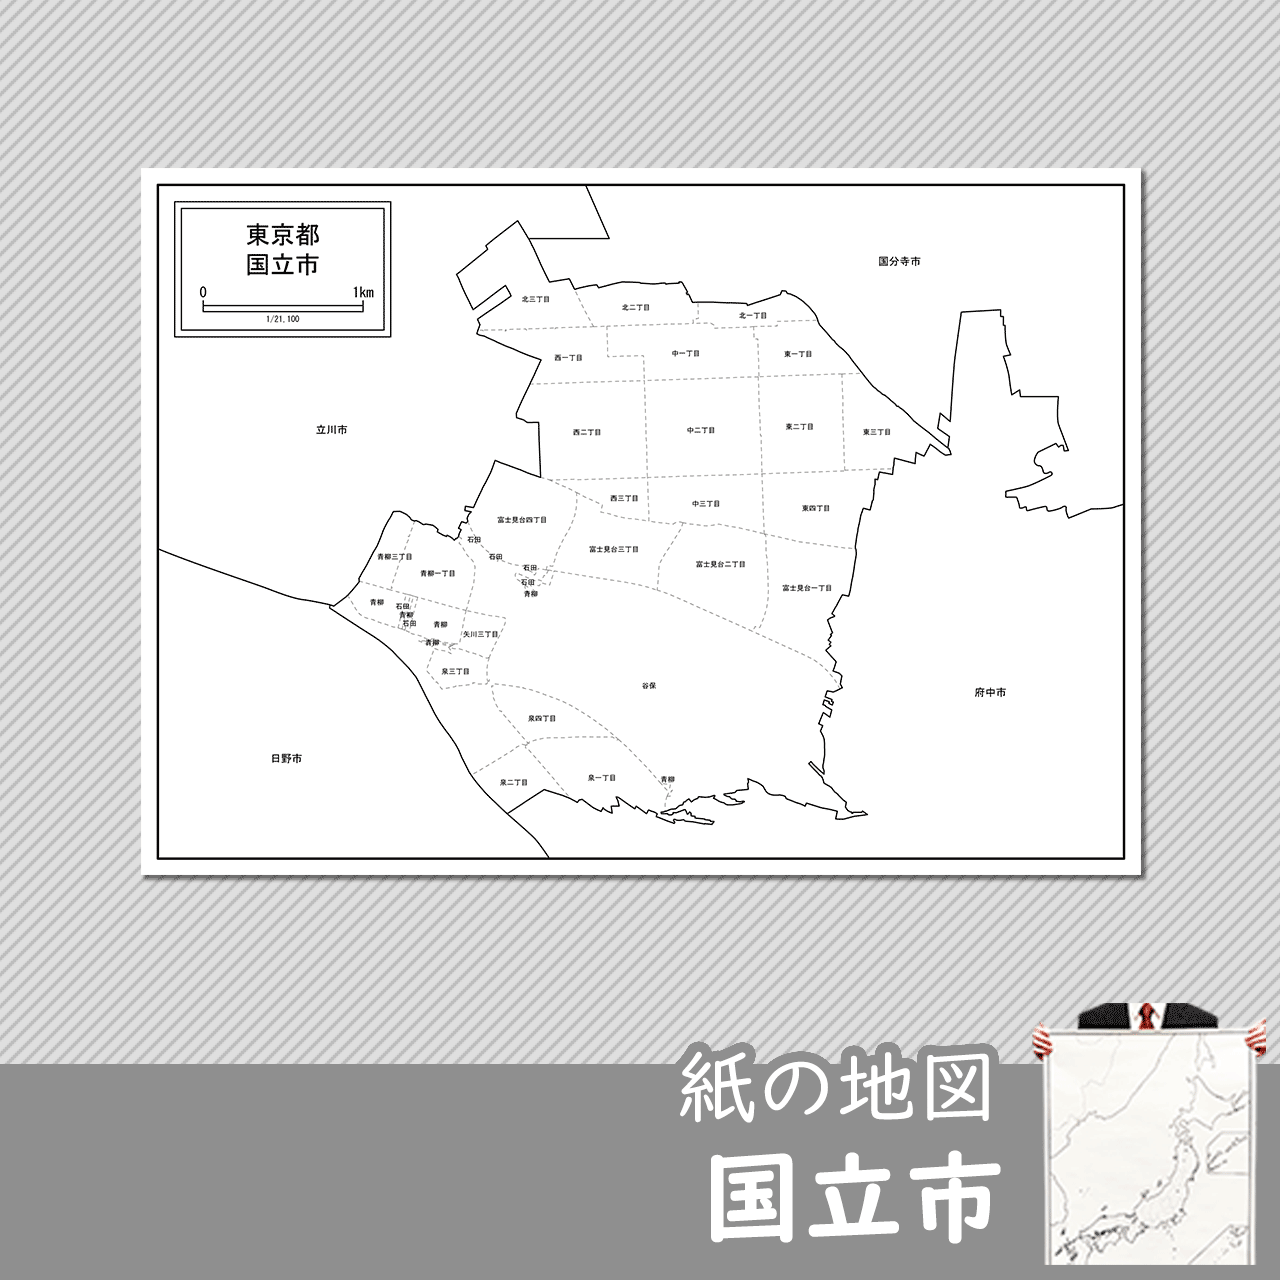 国立市の紙の白地図のサムネイル